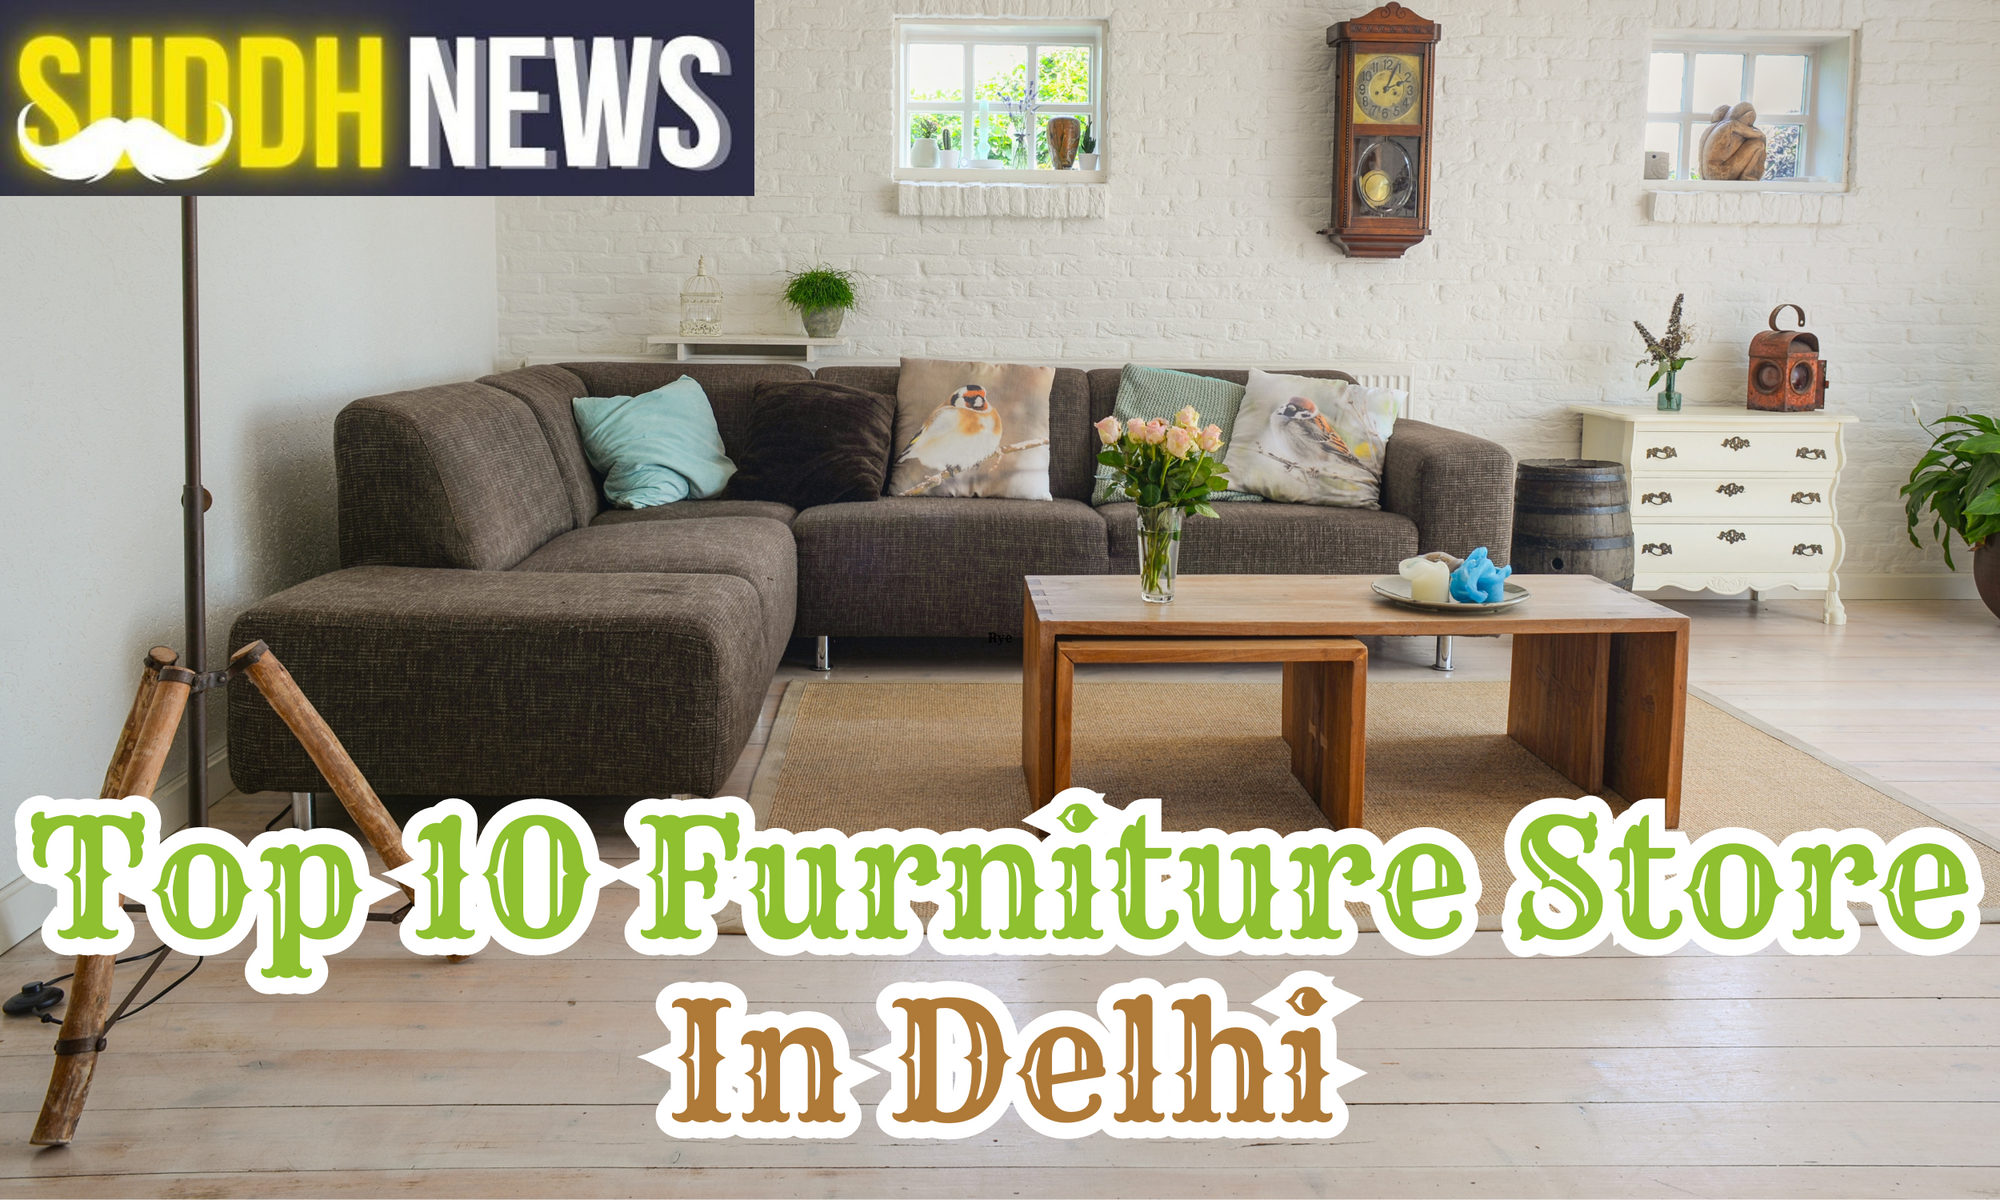 Top 10 Furniture Store In Delhi